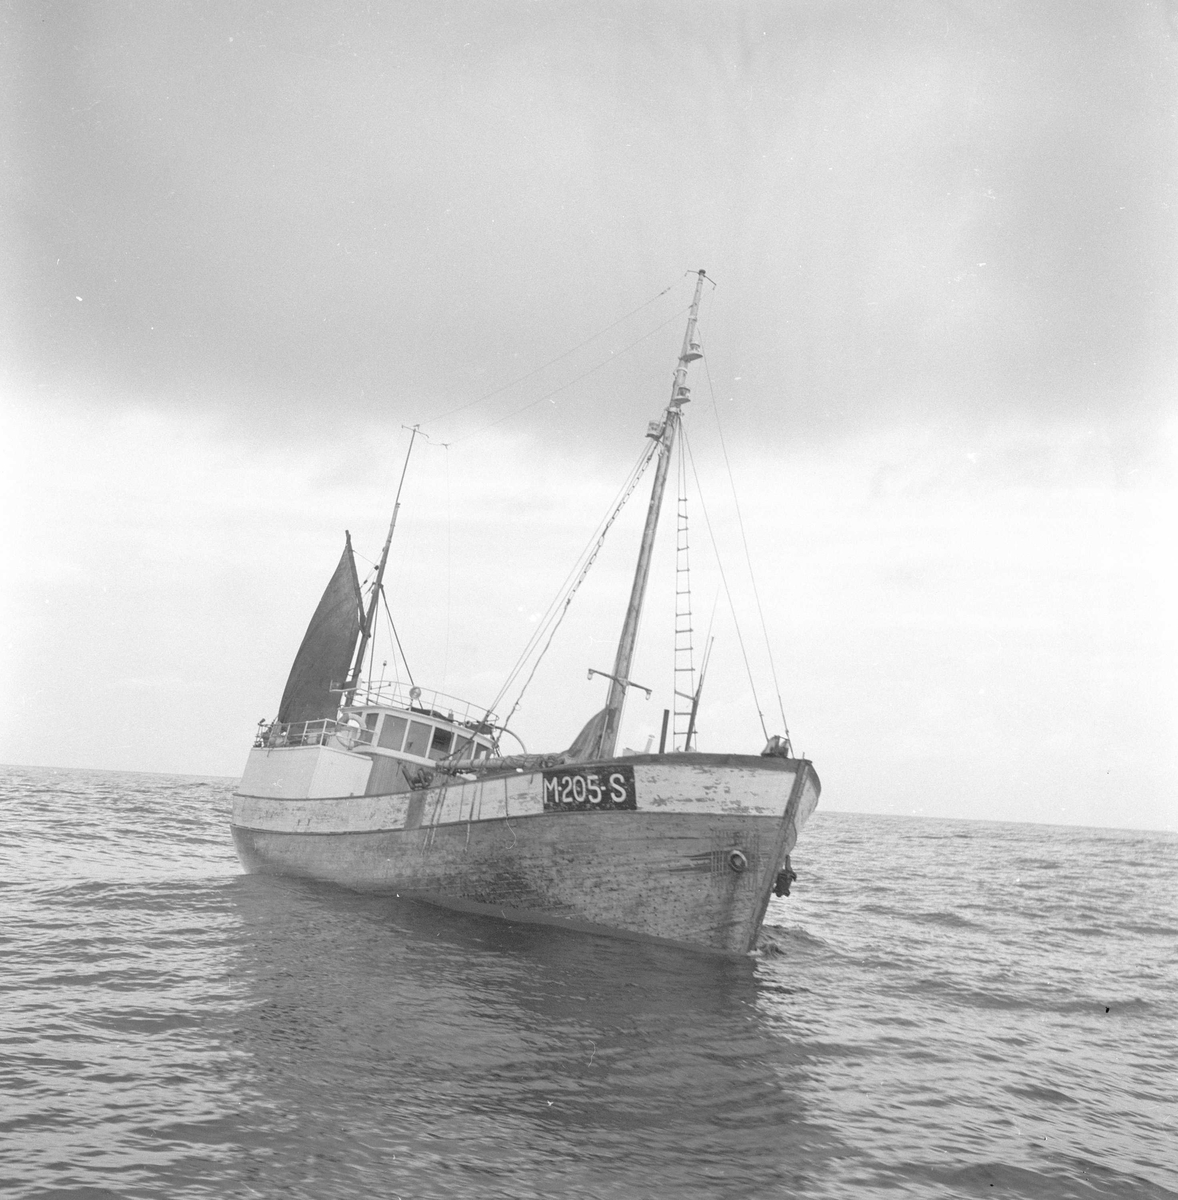 Pigghåfiske på Shetland.
Shetland, 14-22. mai 1958, fiskeskøyte i åpen sjø.